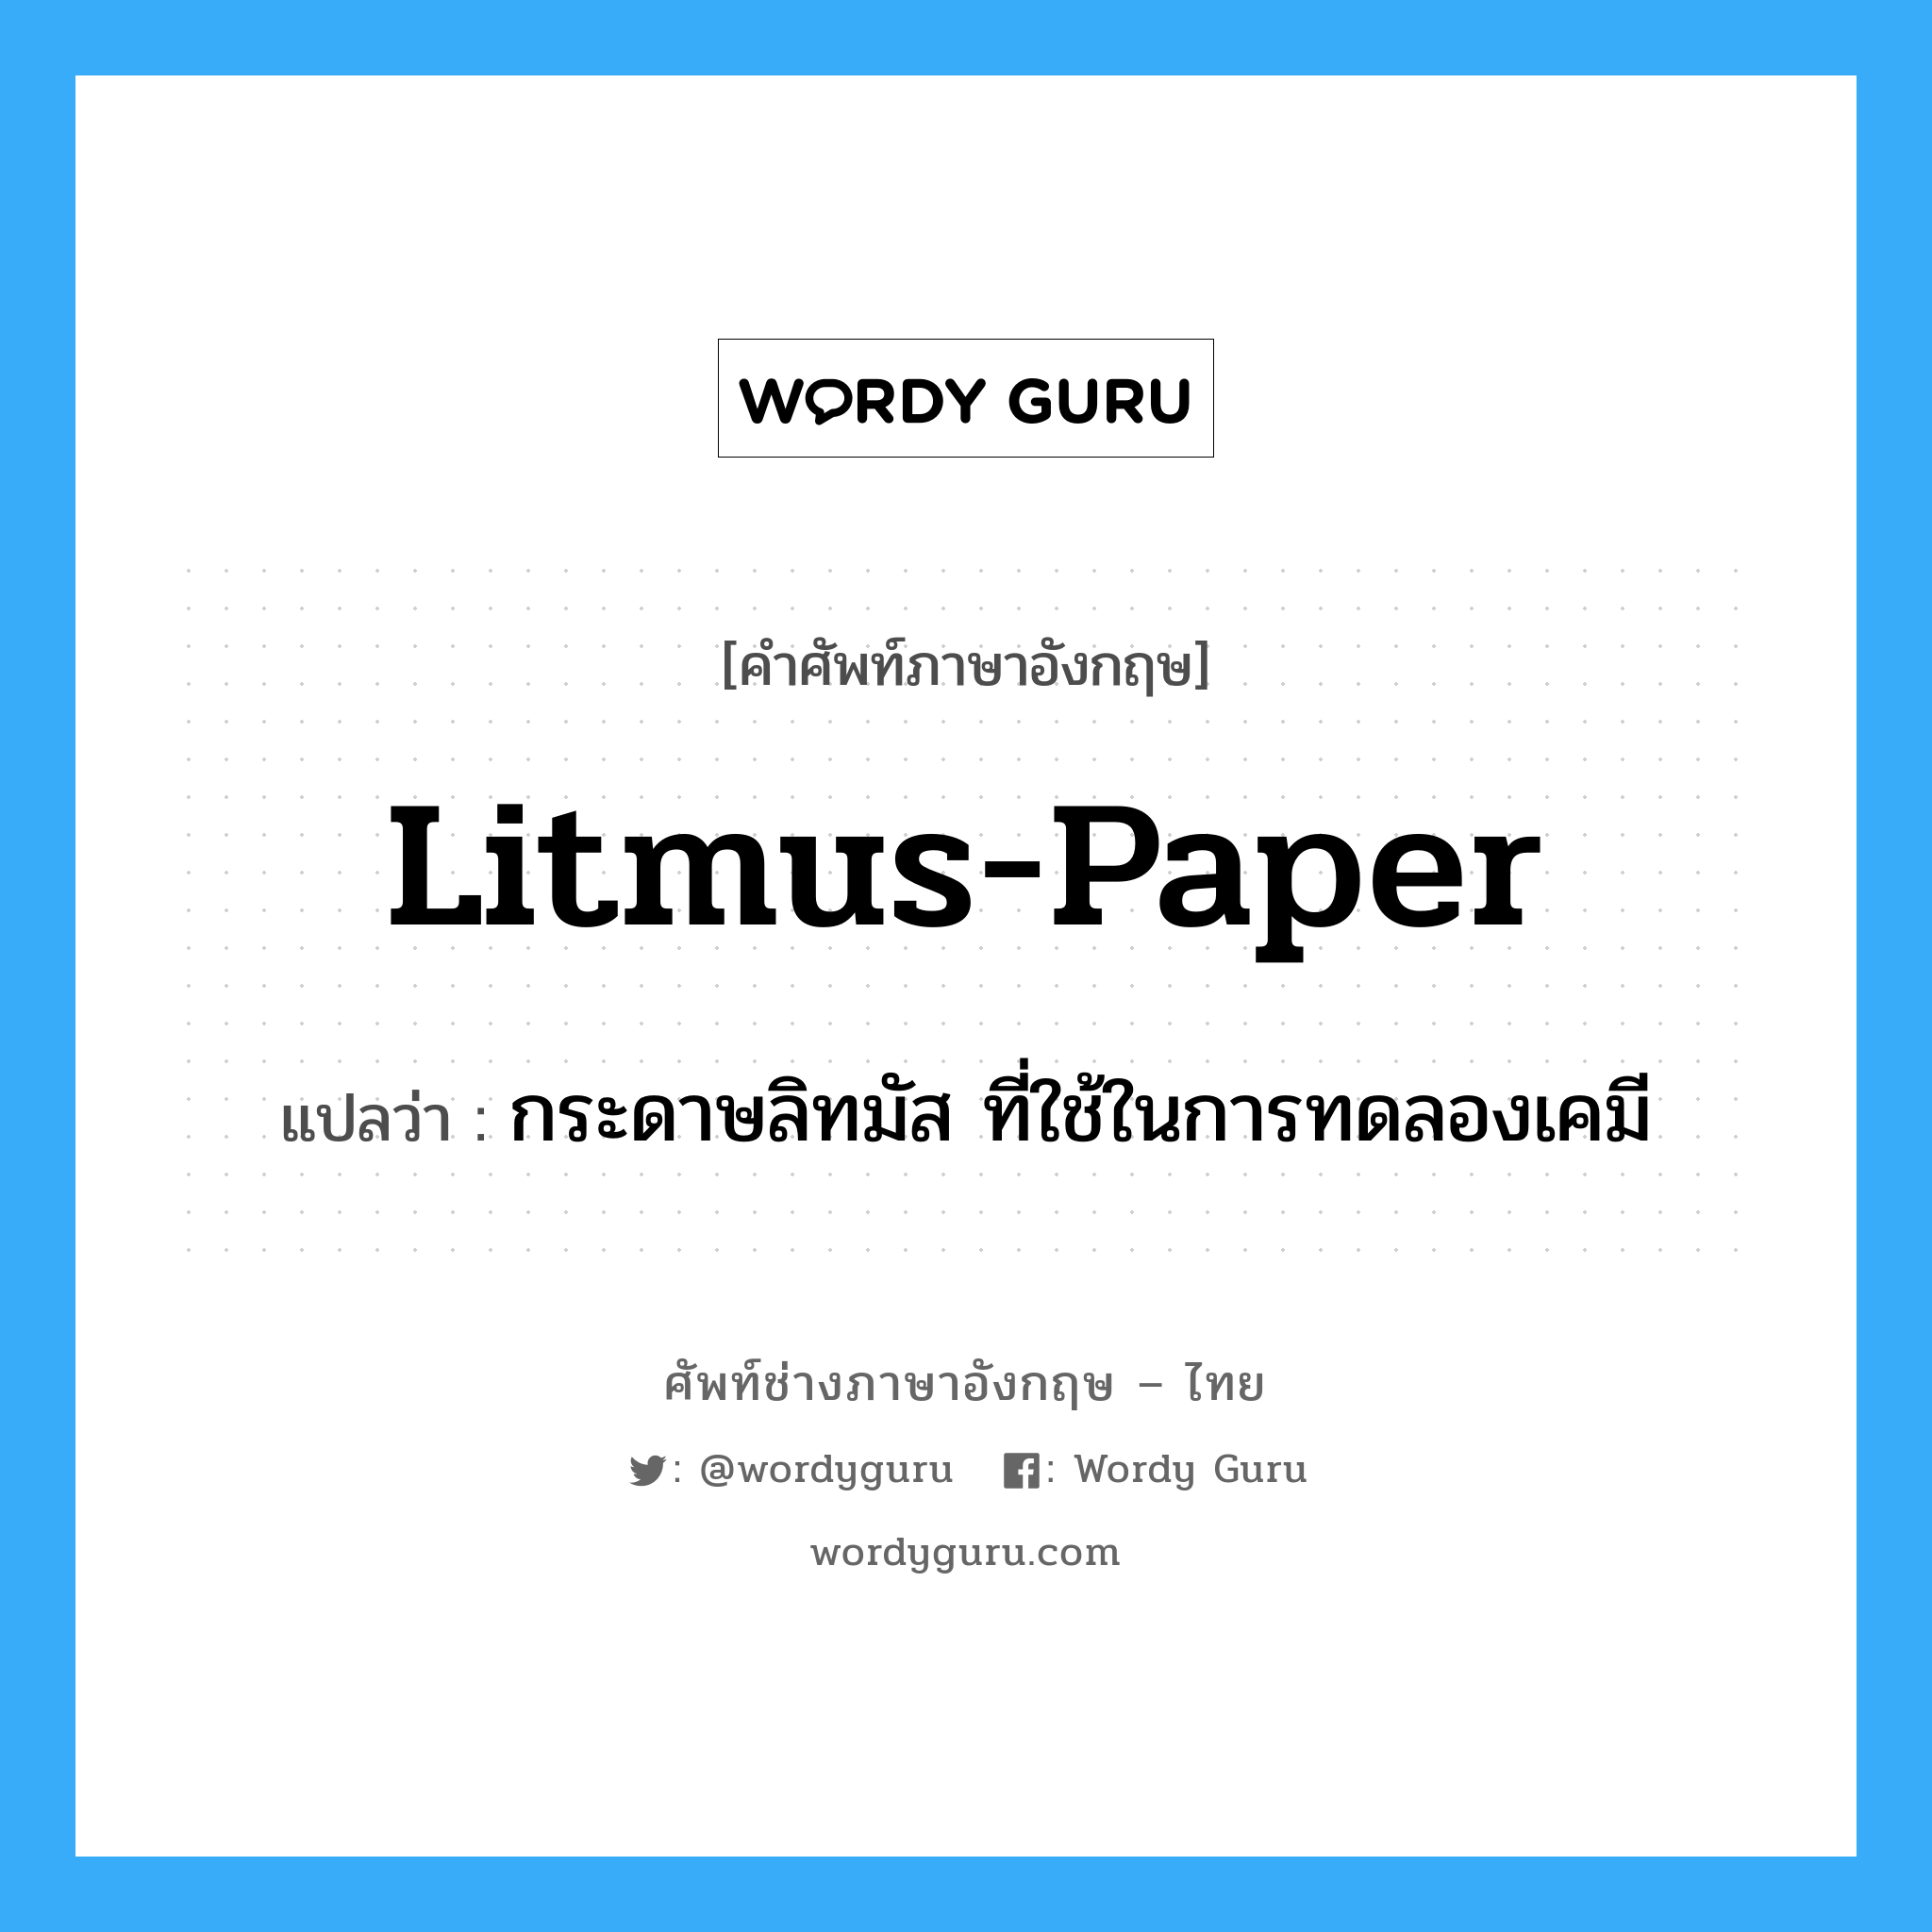 litmus-paper แปลว่า?, คำศัพท์ช่างภาษาอังกฤษ - ไทย litmus-paper คำศัพท์ภาษาอังกฤษ litmus-paper แปลว่า กระดาษลิทมัส ที่ใช้ในการทดลองเคมี